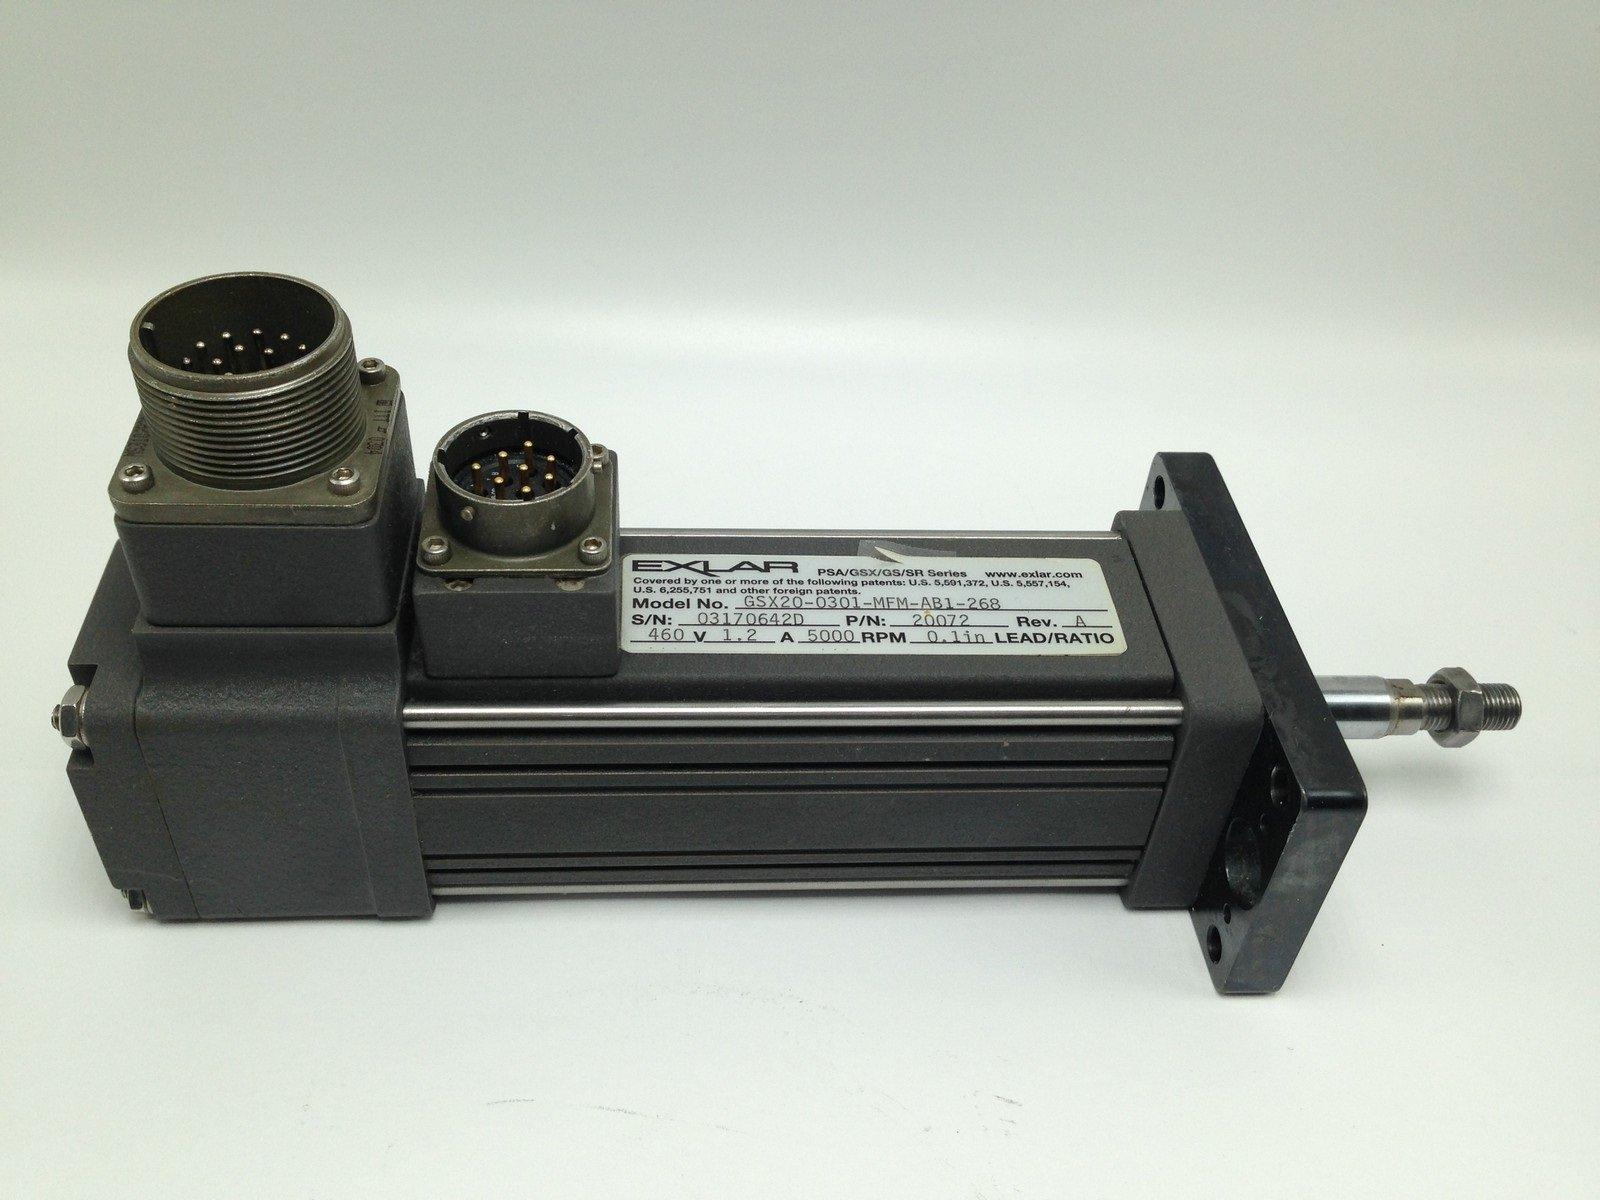  Exlar GSX20-0301-MFM-AB1-268 Linear Actuator 